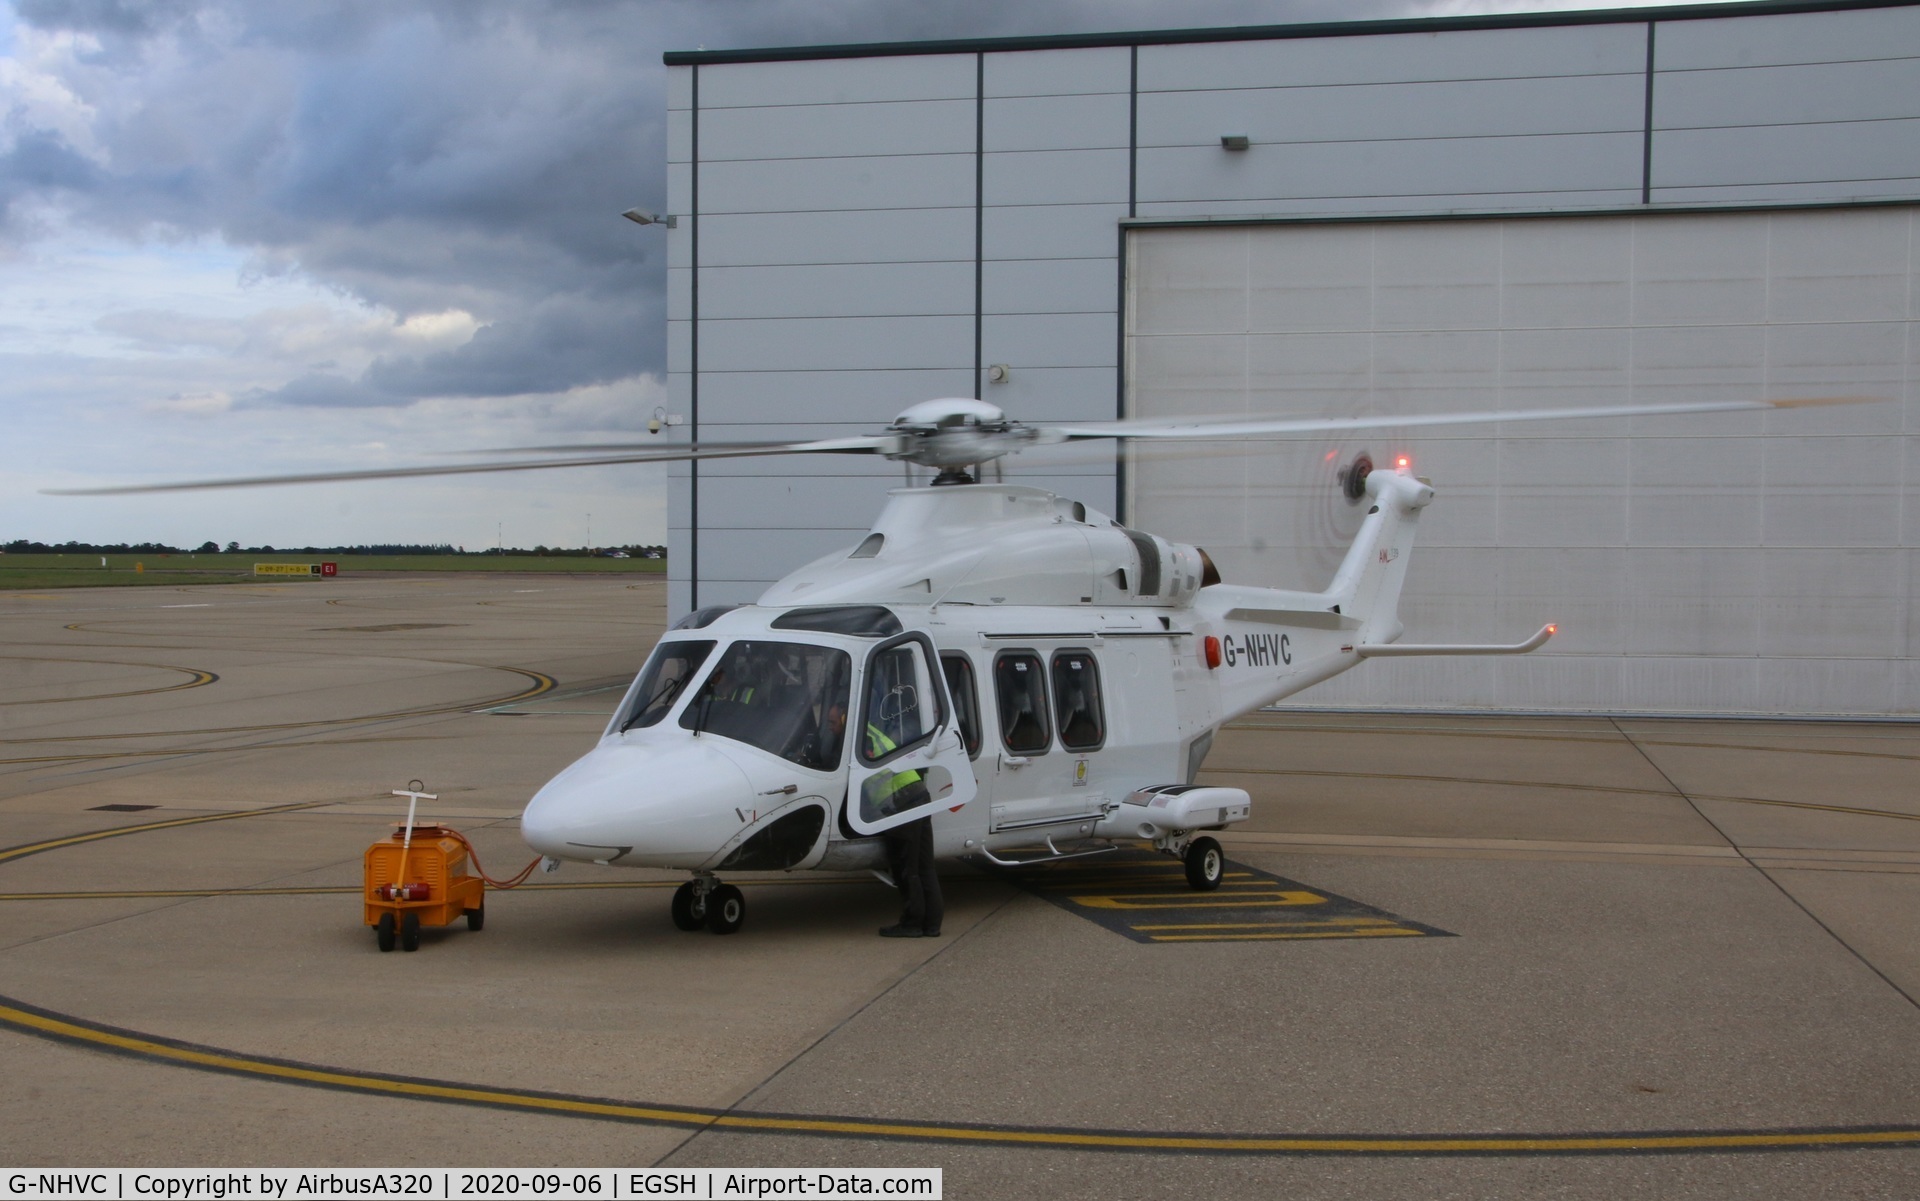 G-NHVC, 2015 AgustaWestland AW-139 C/N 31704, Undergoing an engine run at NHV Norwich